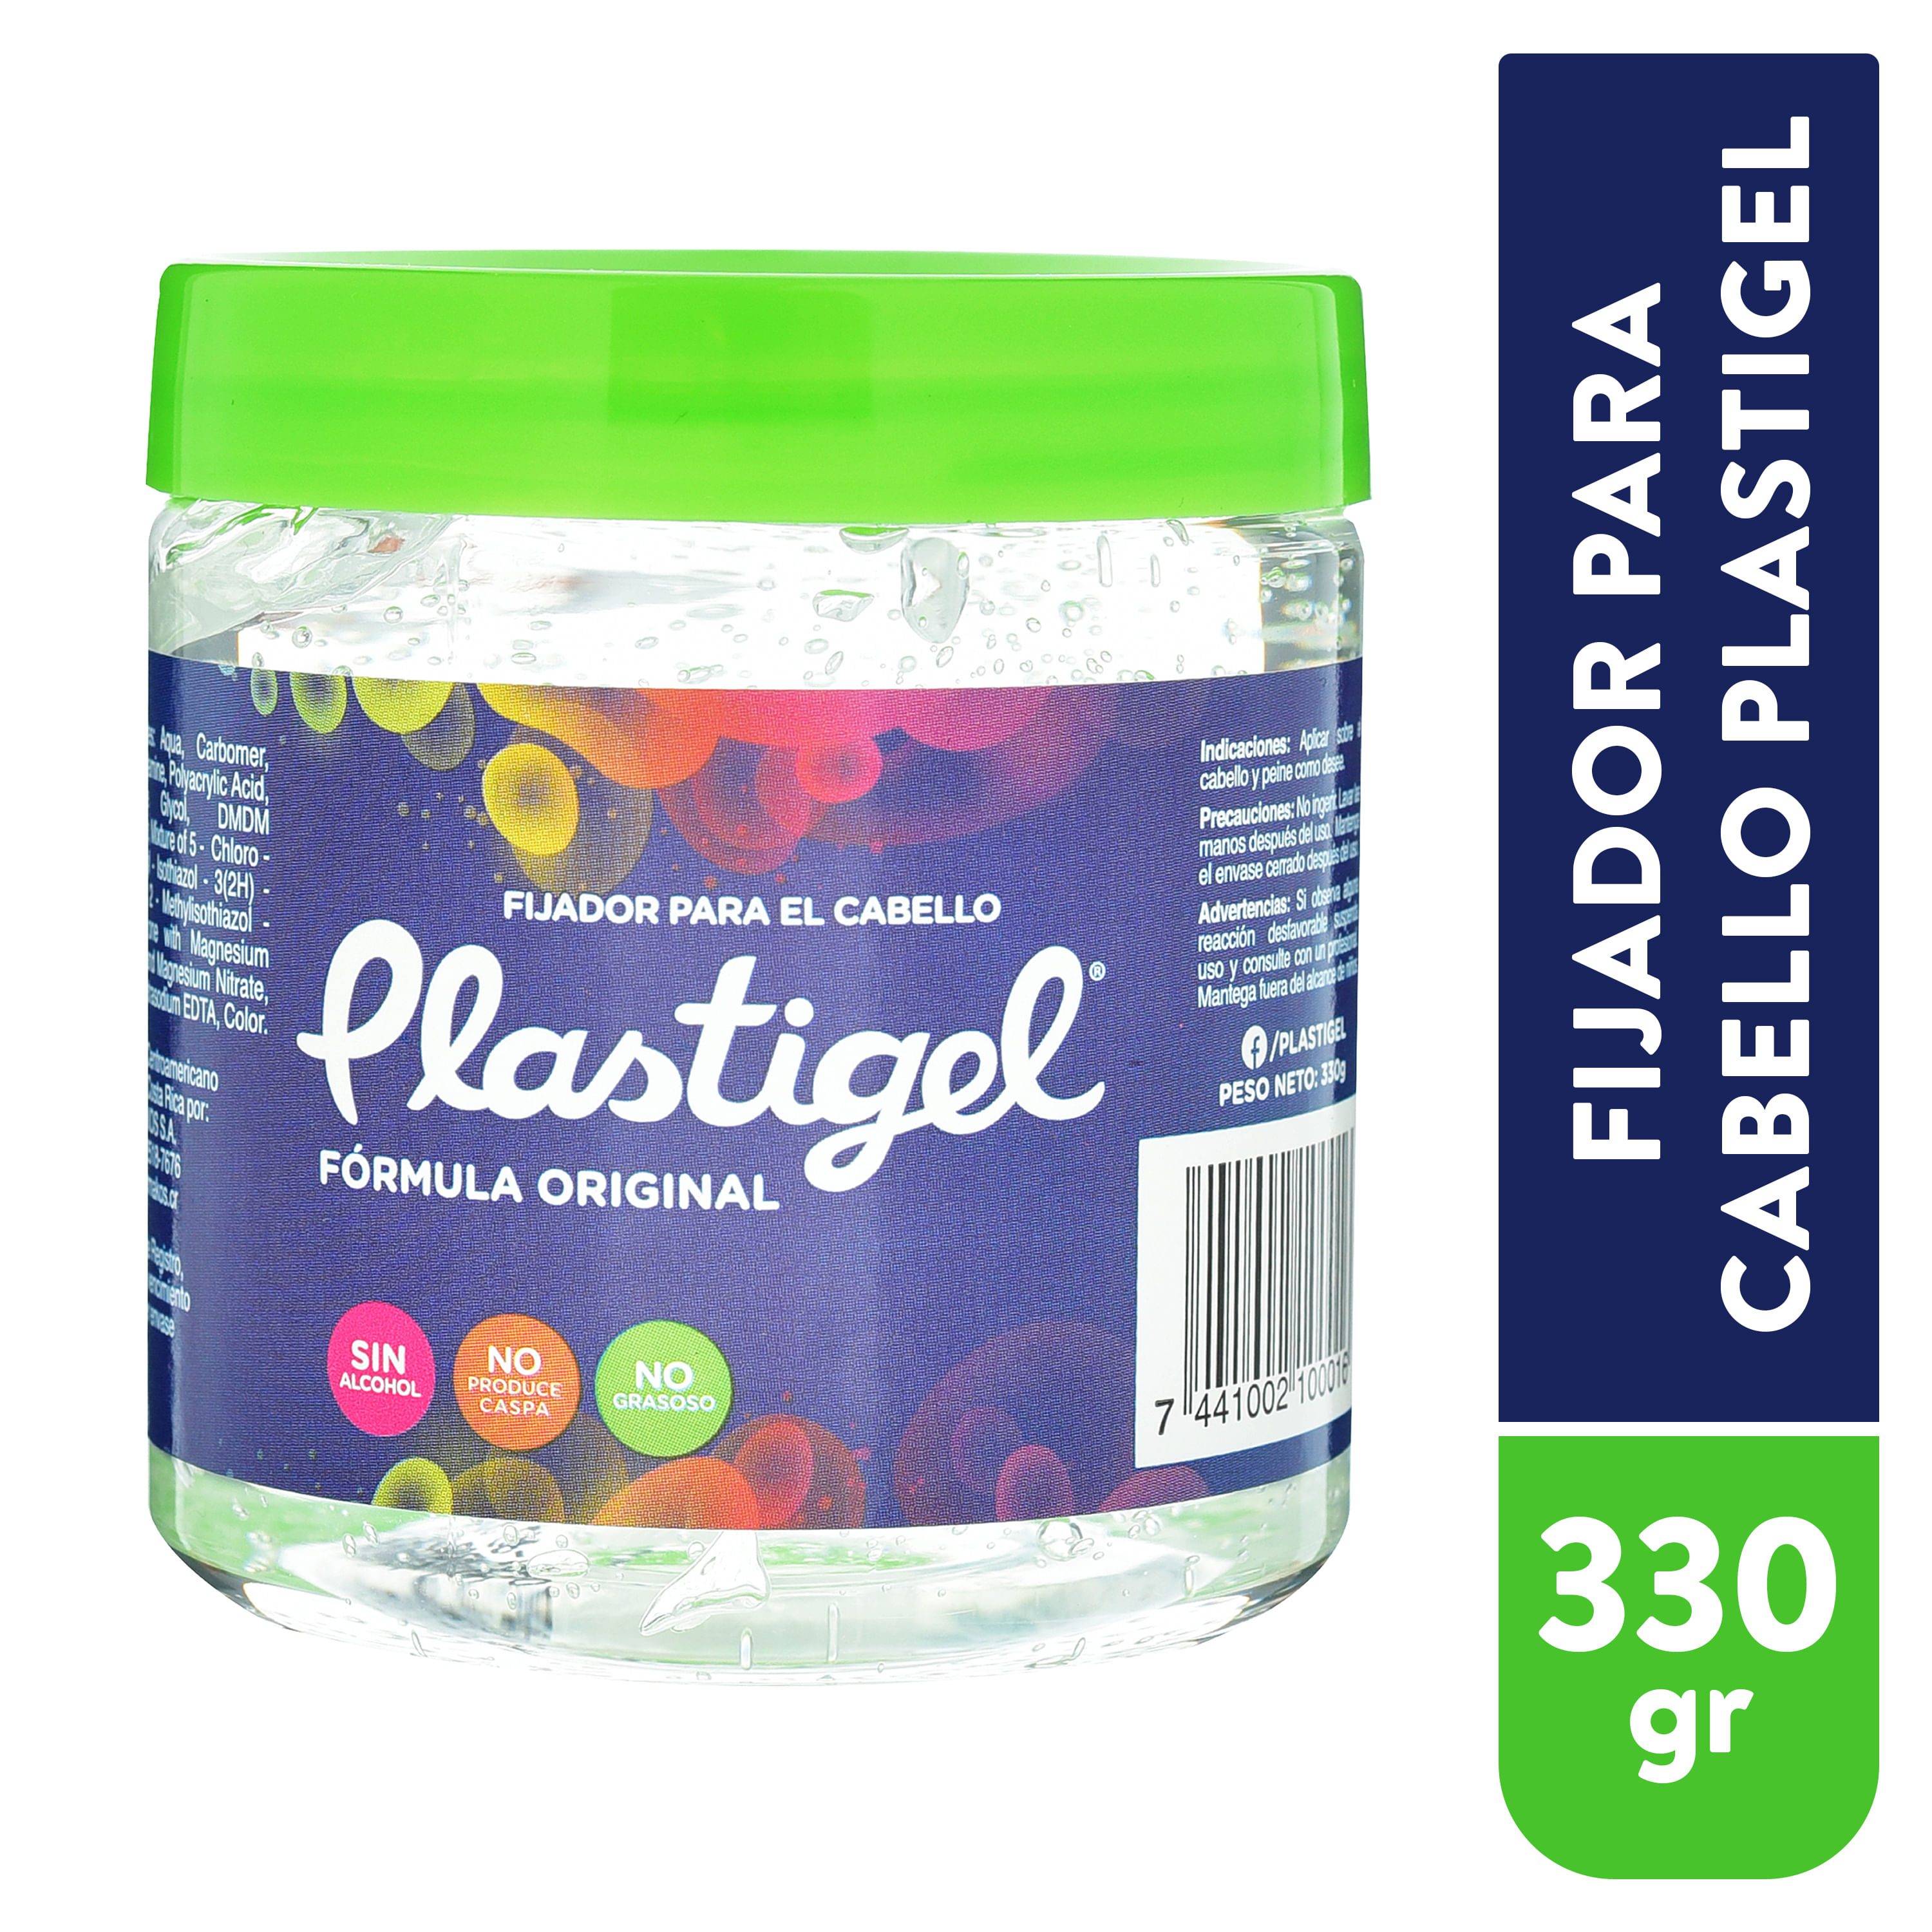 Plastigel-Fijador-En-Gel-Para-Cabello-Formula-Original-330-Gramos-1-31470